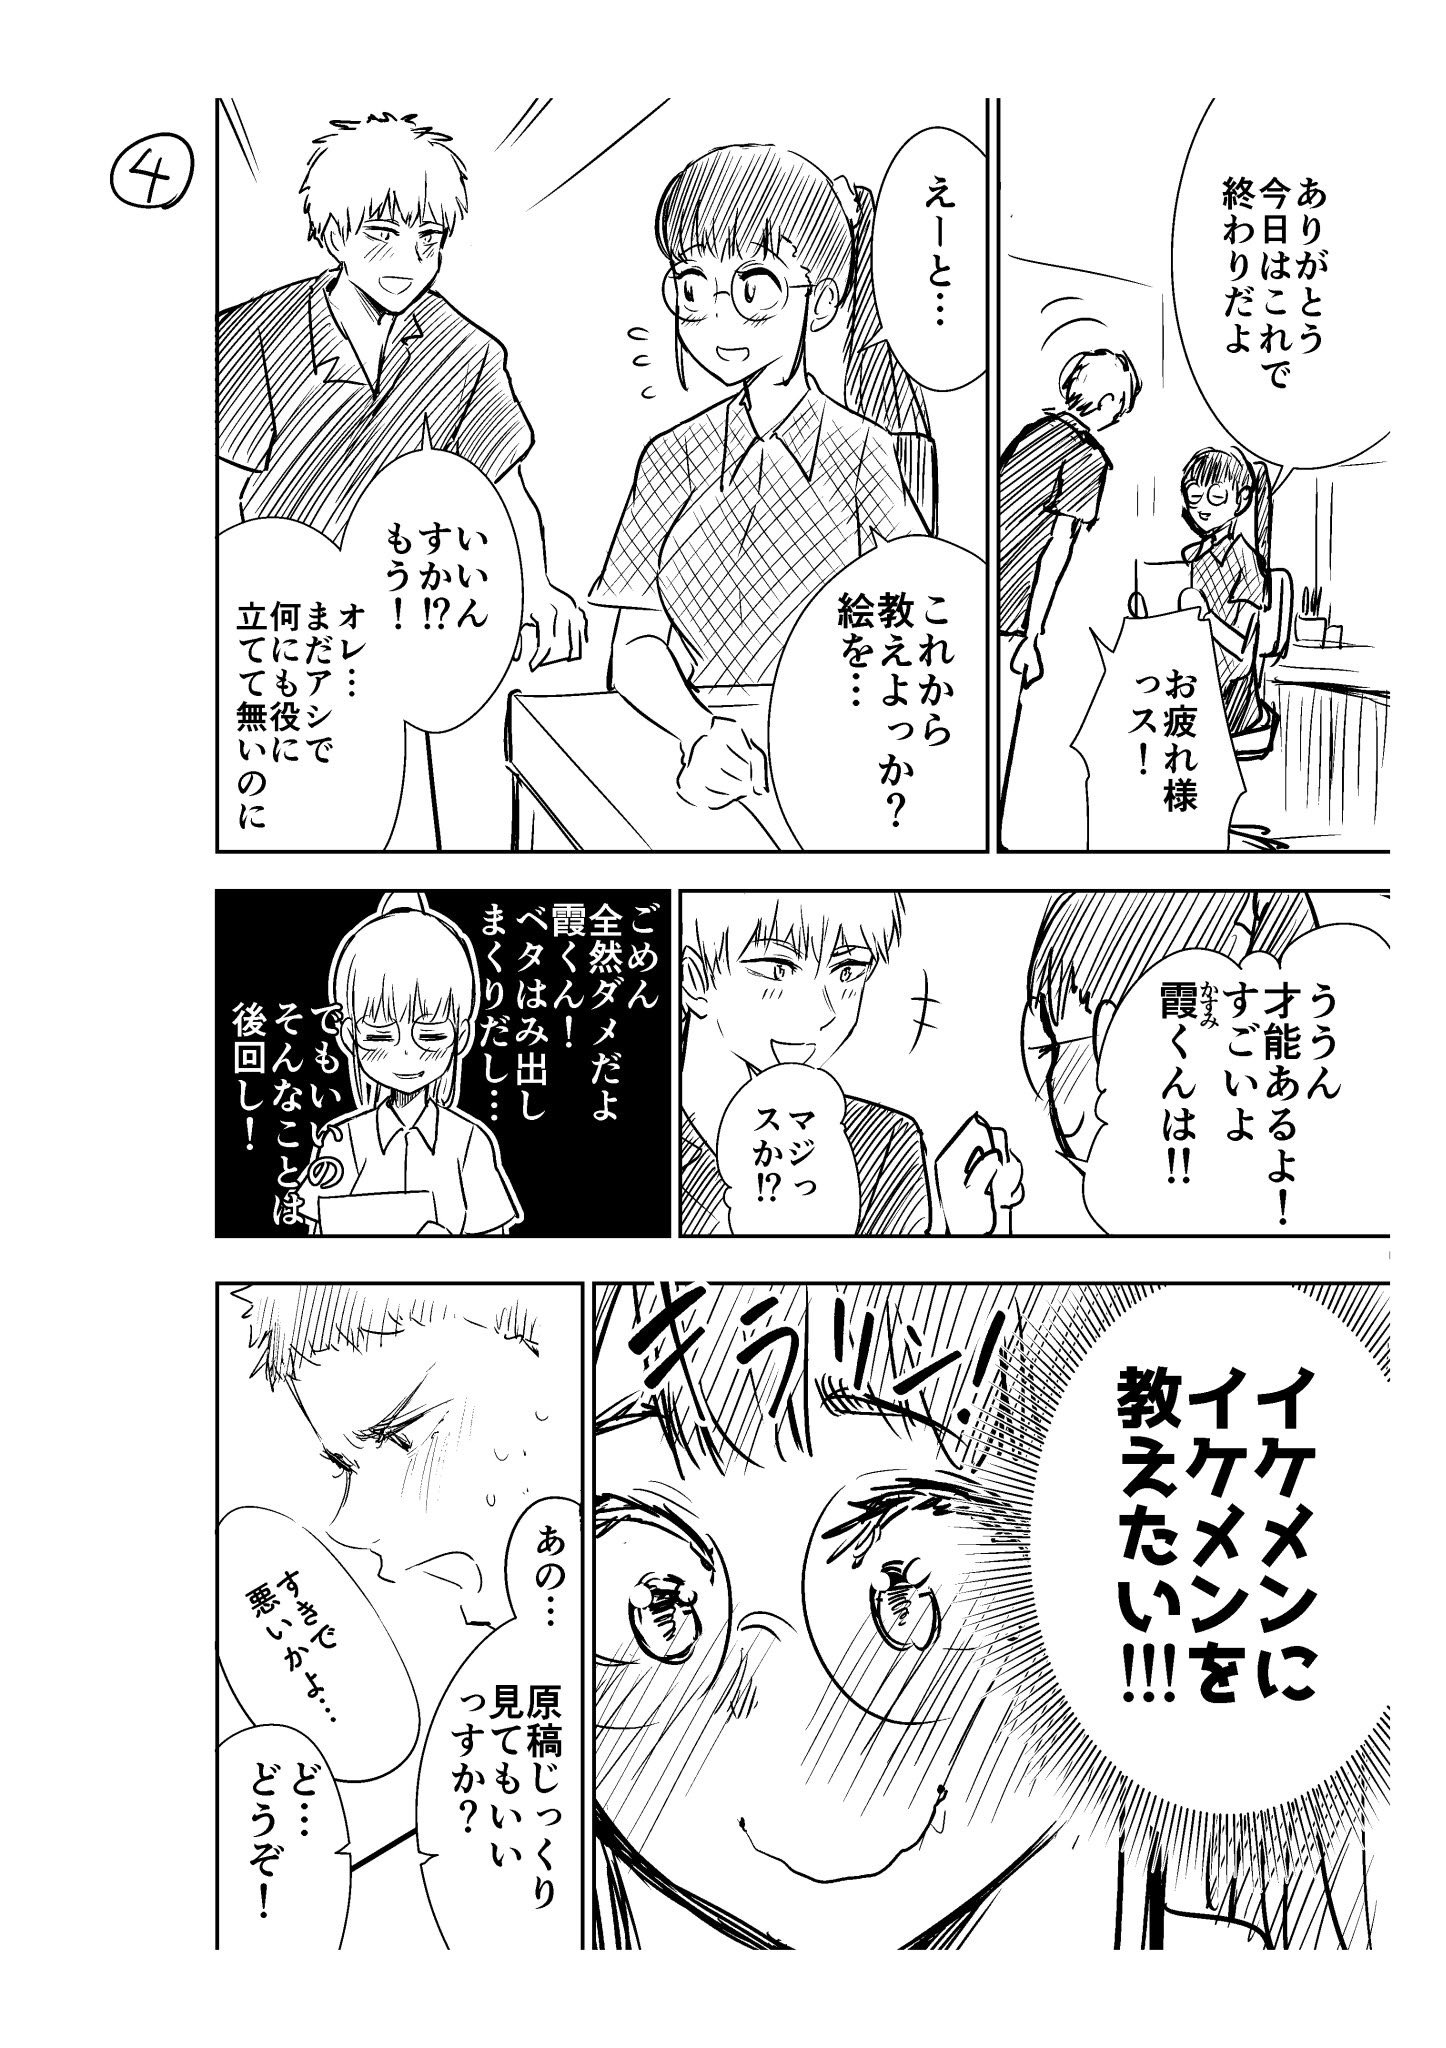 漫画家 大竹利朋 献身レシピ がのラブ イケメンアシさんにイケメンの描き方を教えることになった少女漫画家の話3 T Co Jukjqziknk Twitter